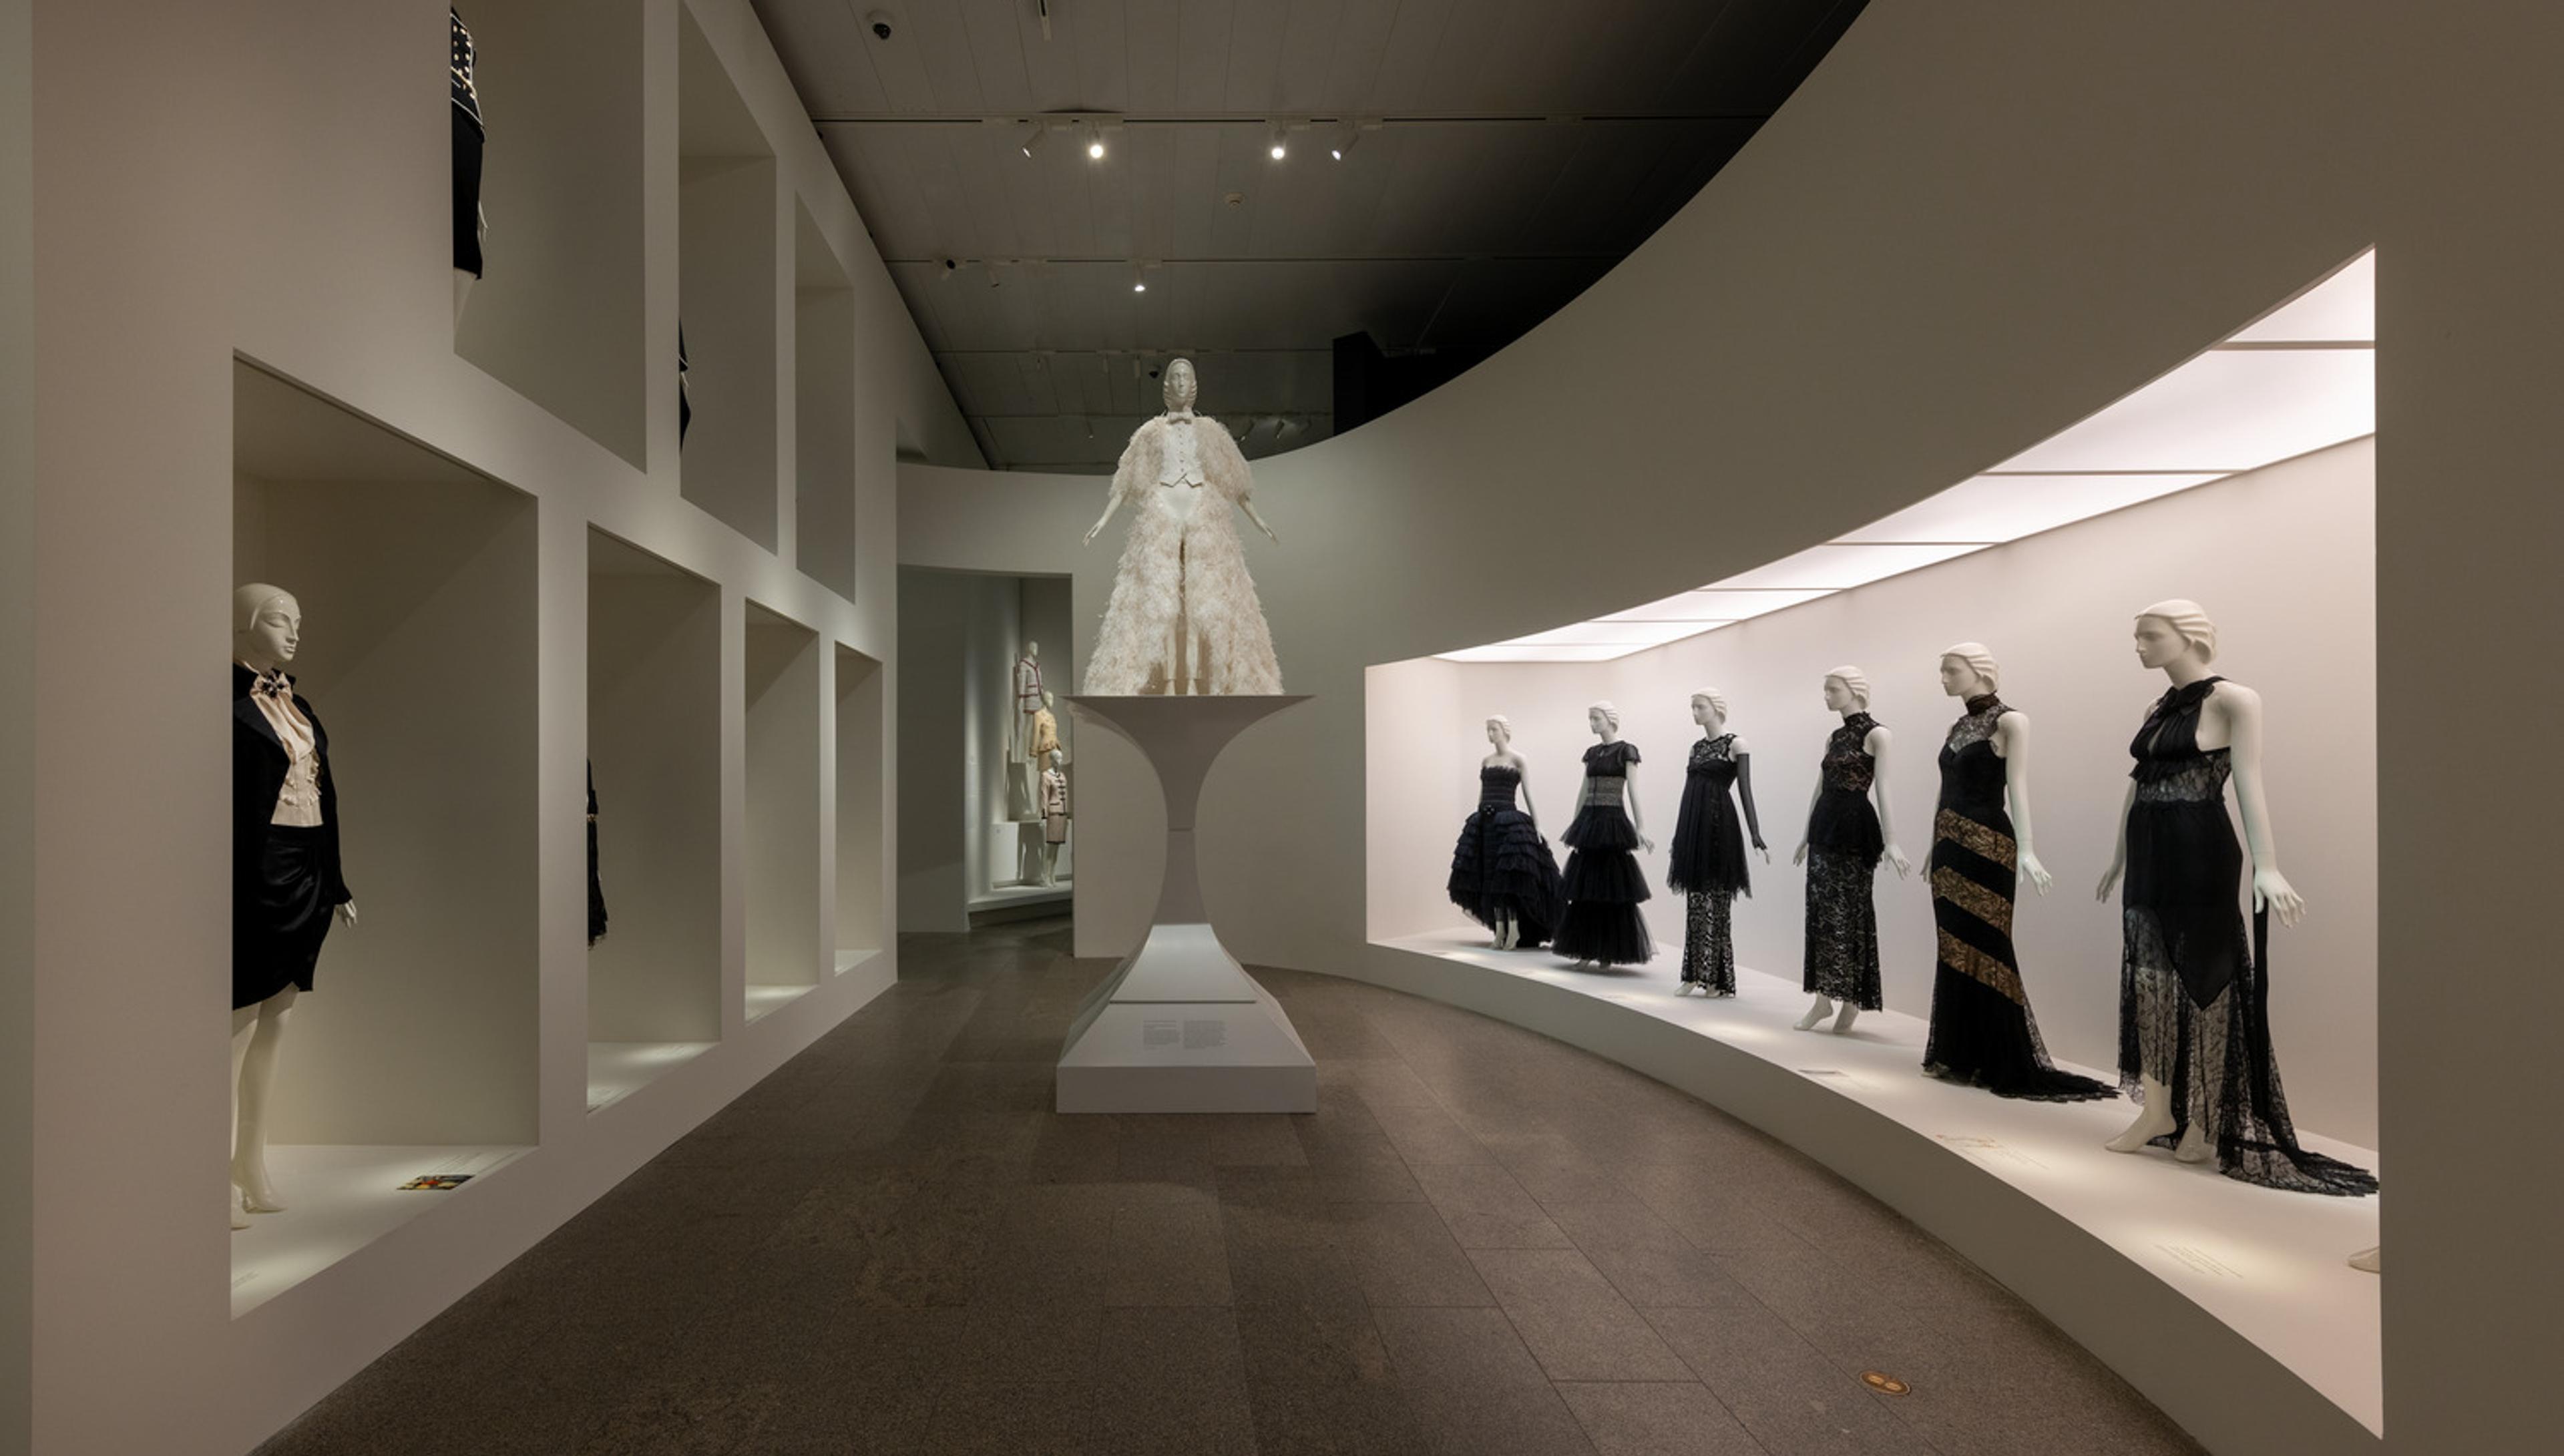 Mannequins wearing garments designed by Karl Lagerfeld on display in The Met's galleries.